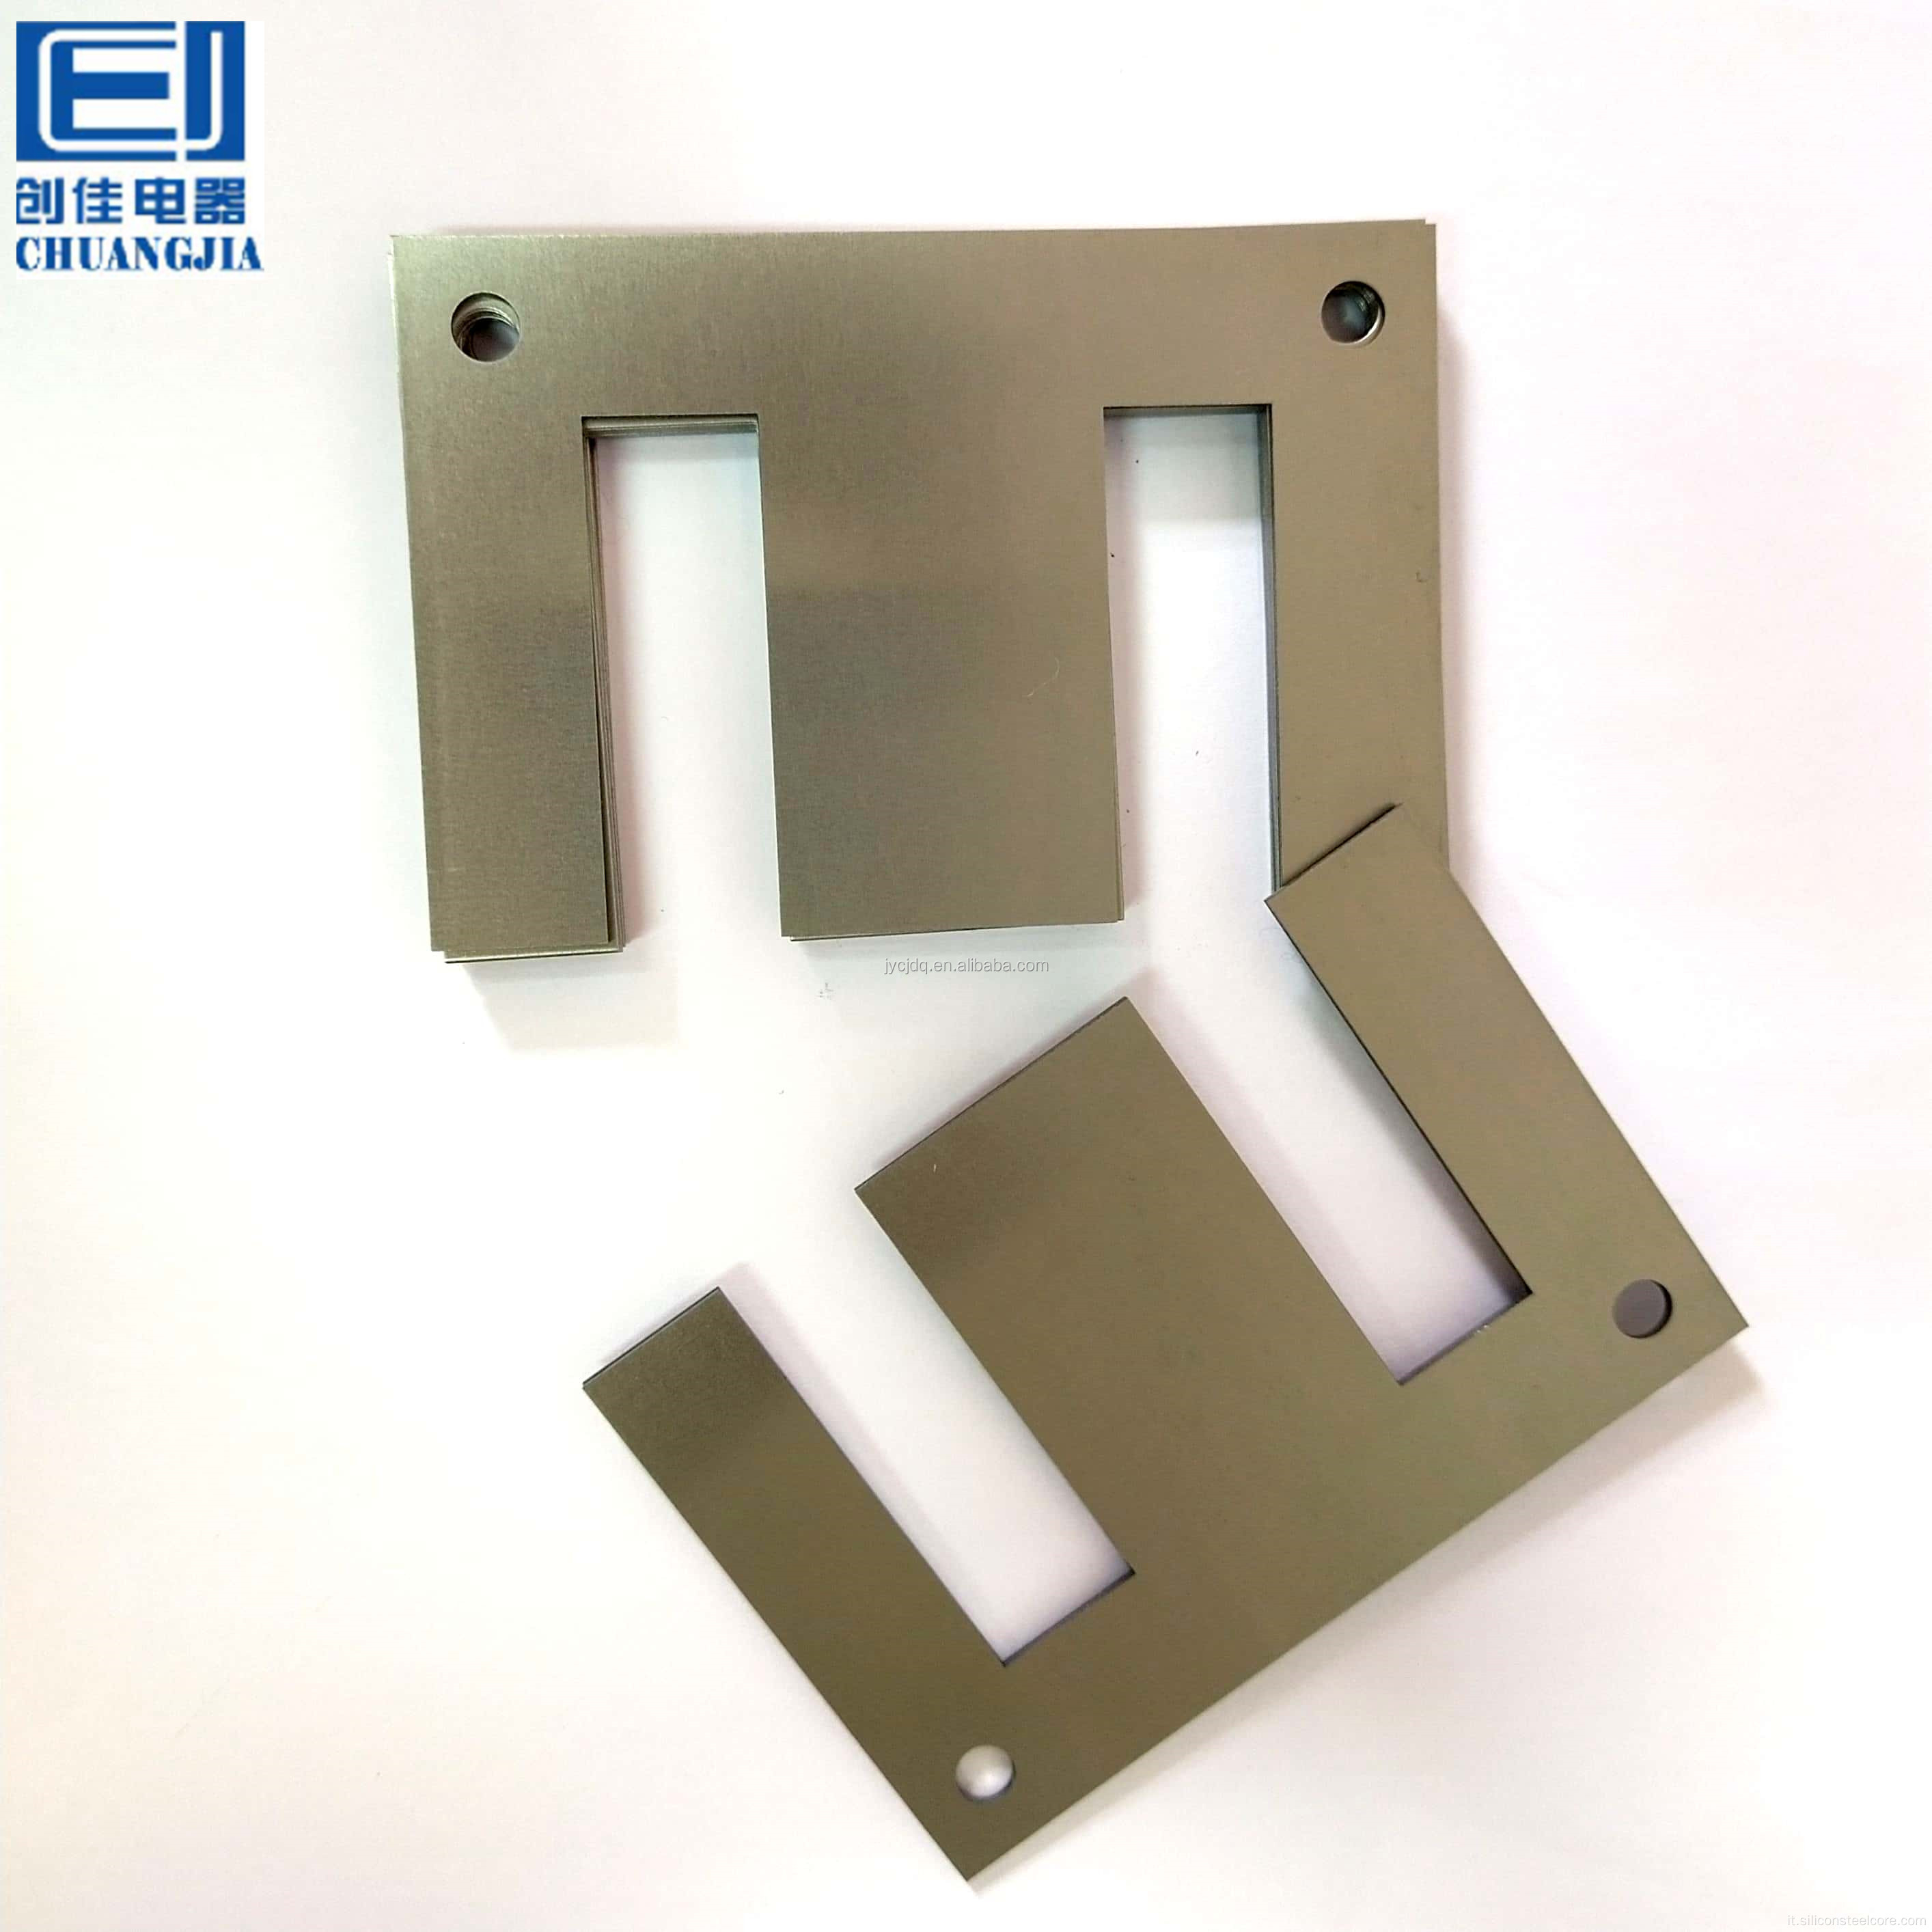 Laminazione in acciaio al silicio in acciaio trasformatore a freddo Chuangjia, foglio di silicio in acciaio di trasformatore EI 192